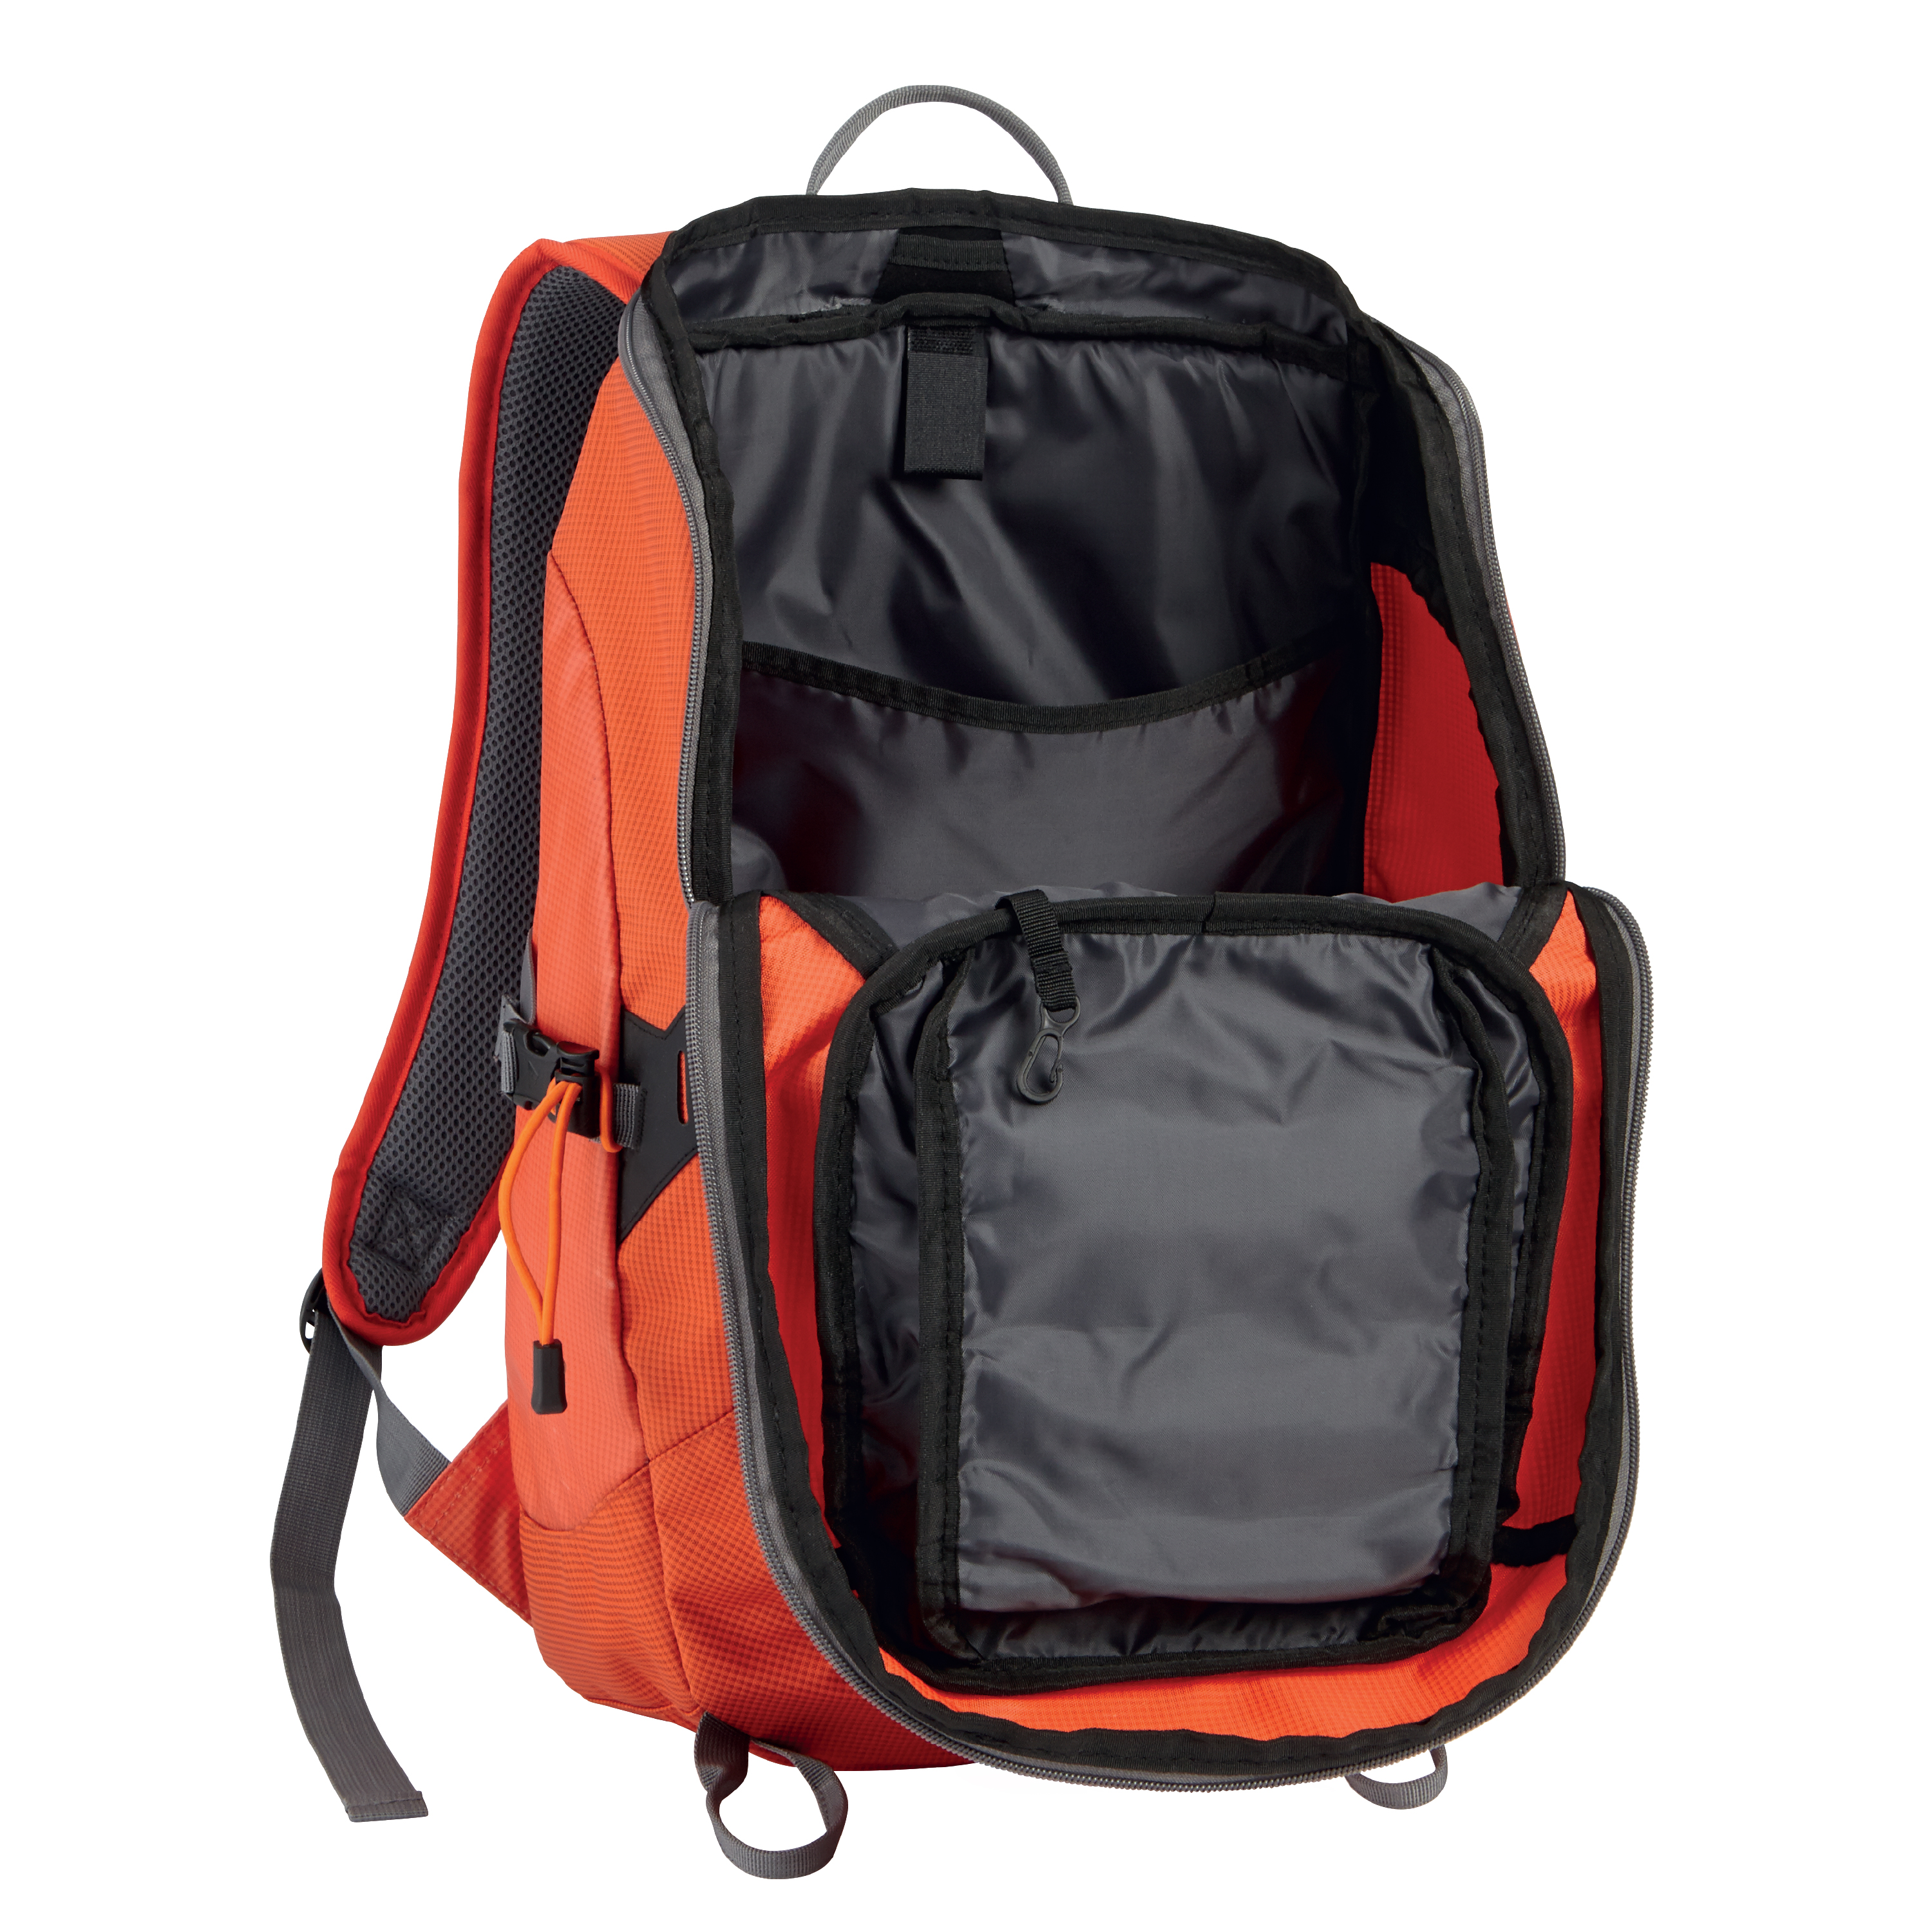 Ozark Trail 35 ltr Backpacking Backpack, Orange - image 4 of 5